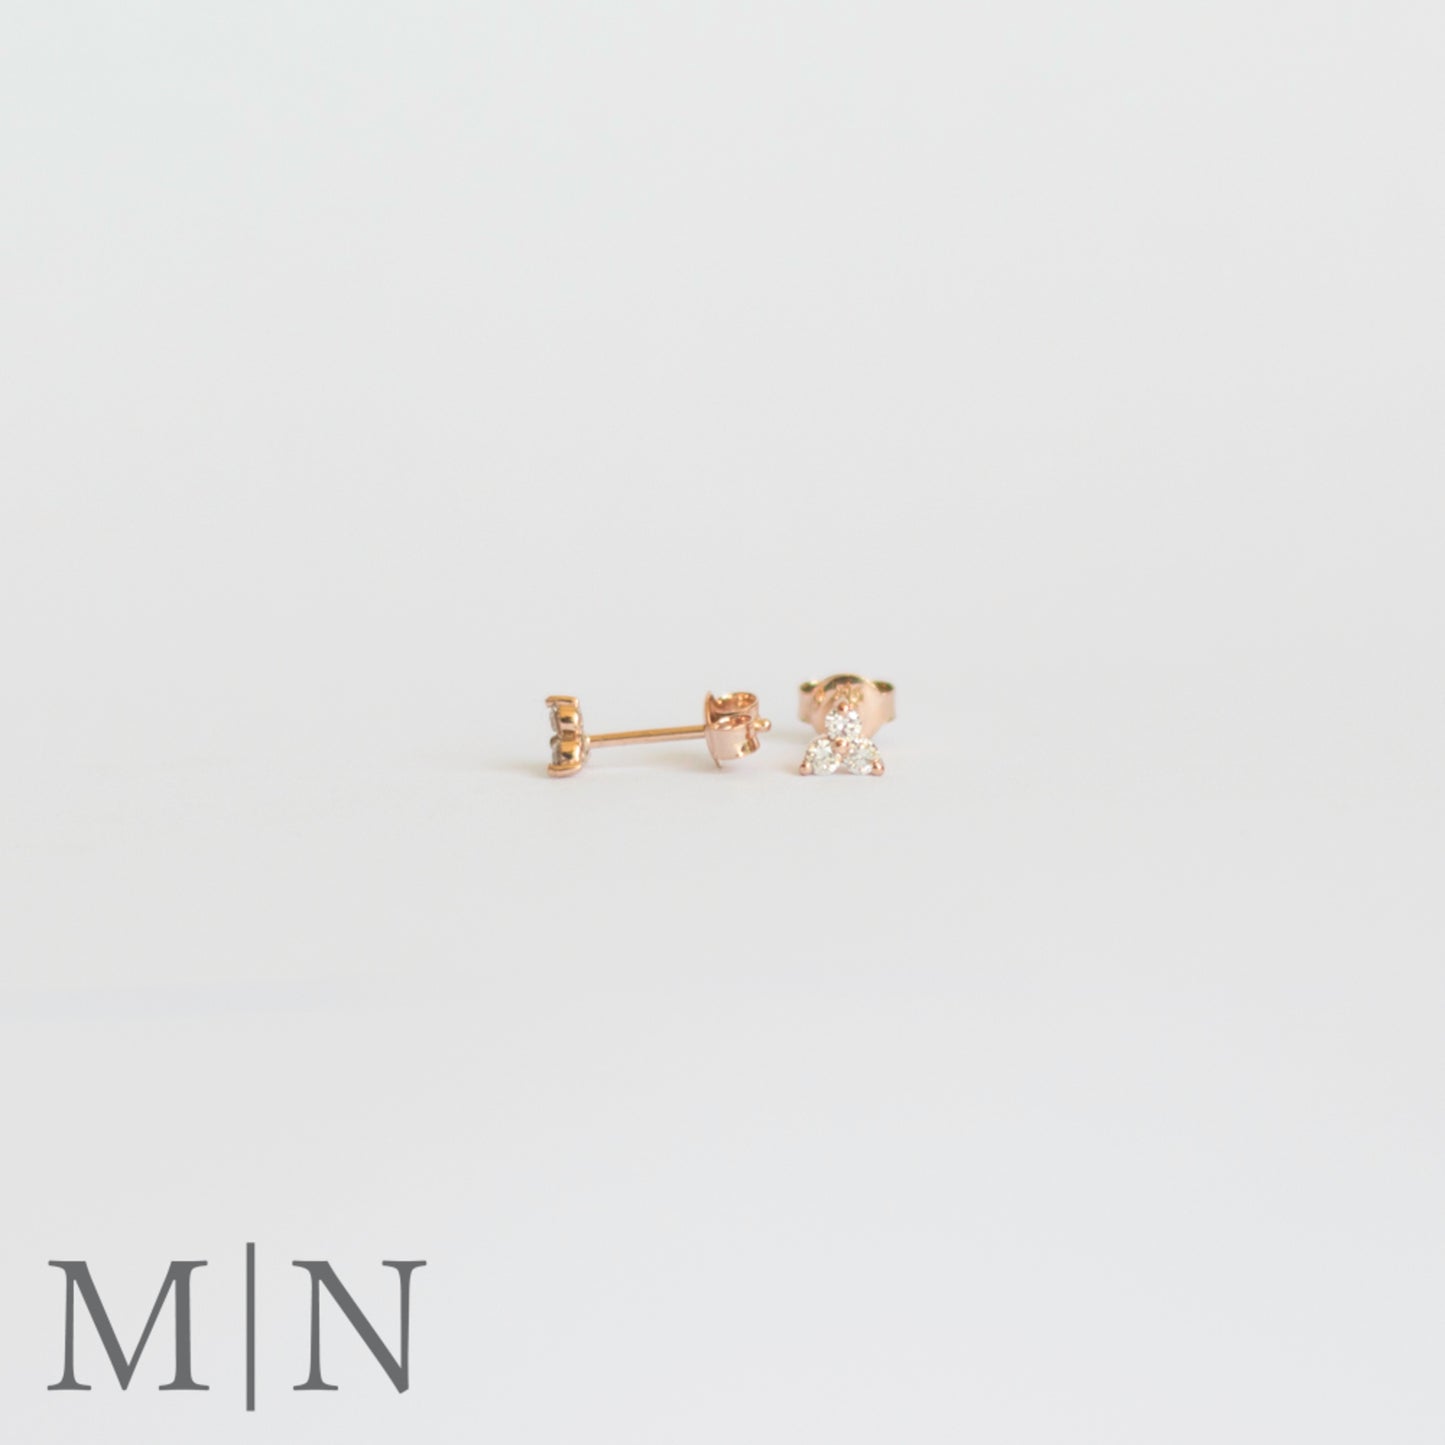 Rose Gold & Diamond Earrings & Stack Ring Set